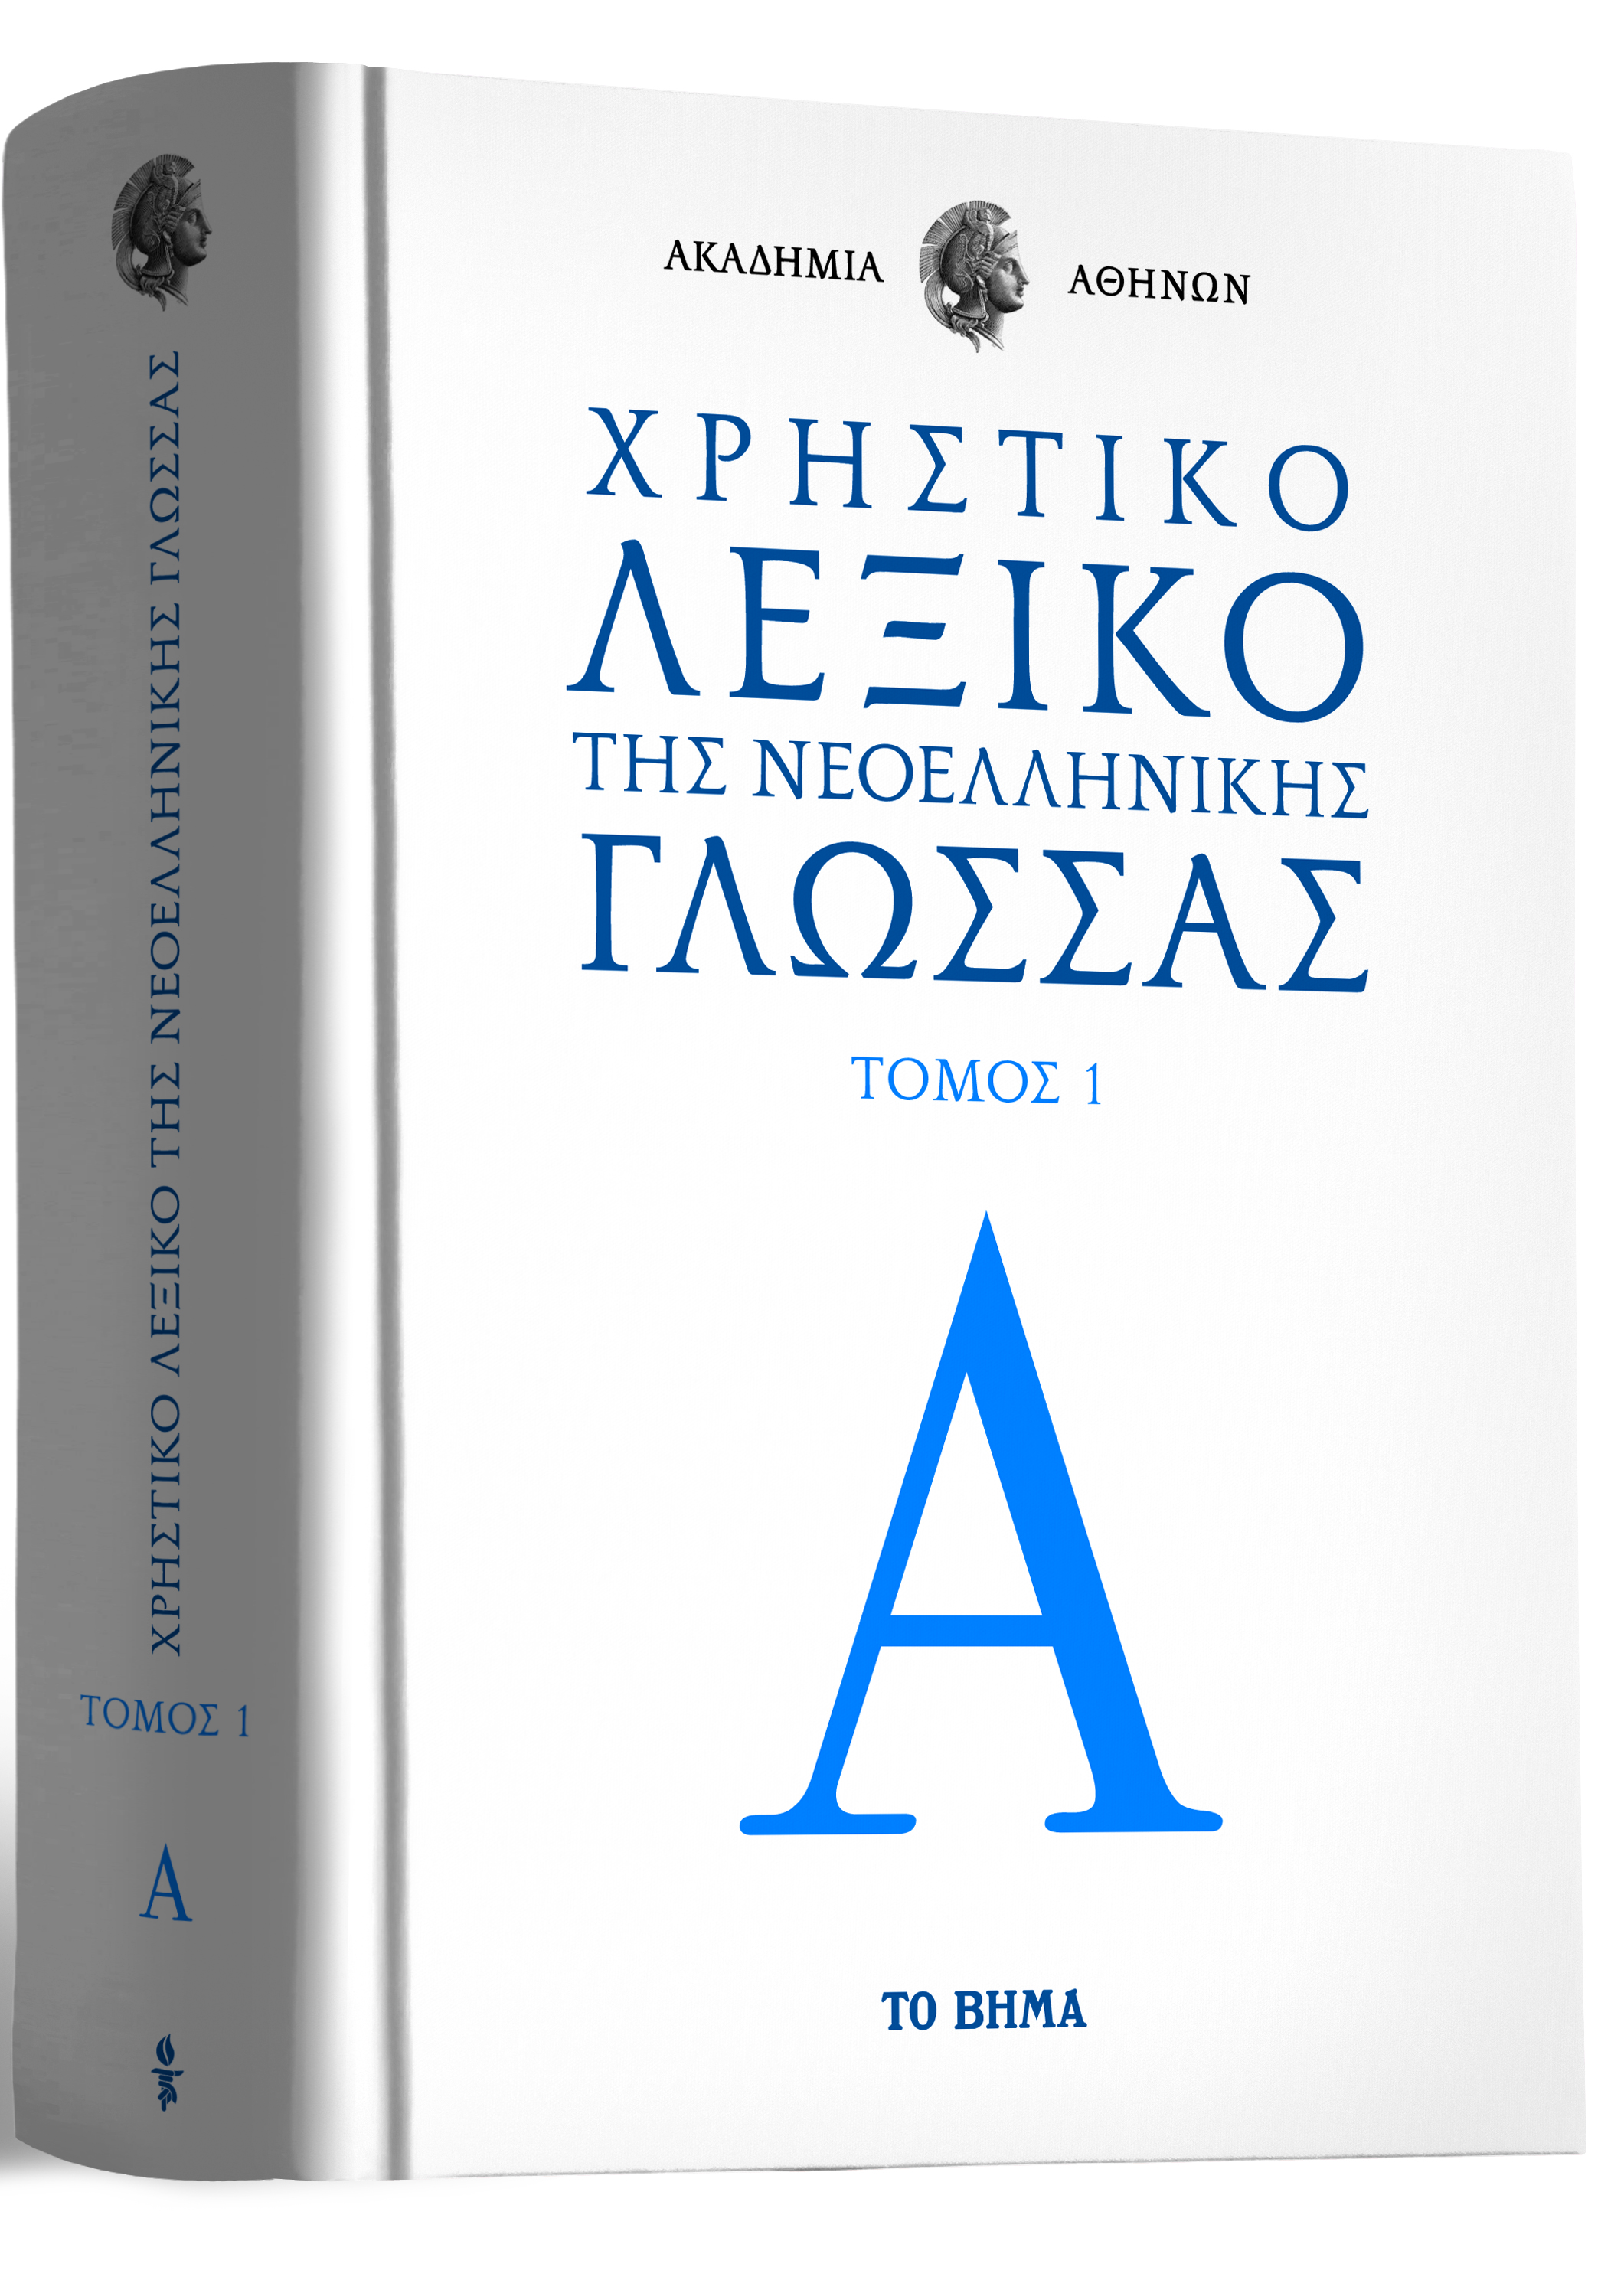 Η μεγάλη προσφορά του «Βήματος της Κυριακής» – Το Χρηστικό Λεξικό της Ακαδημίας Αθηνών